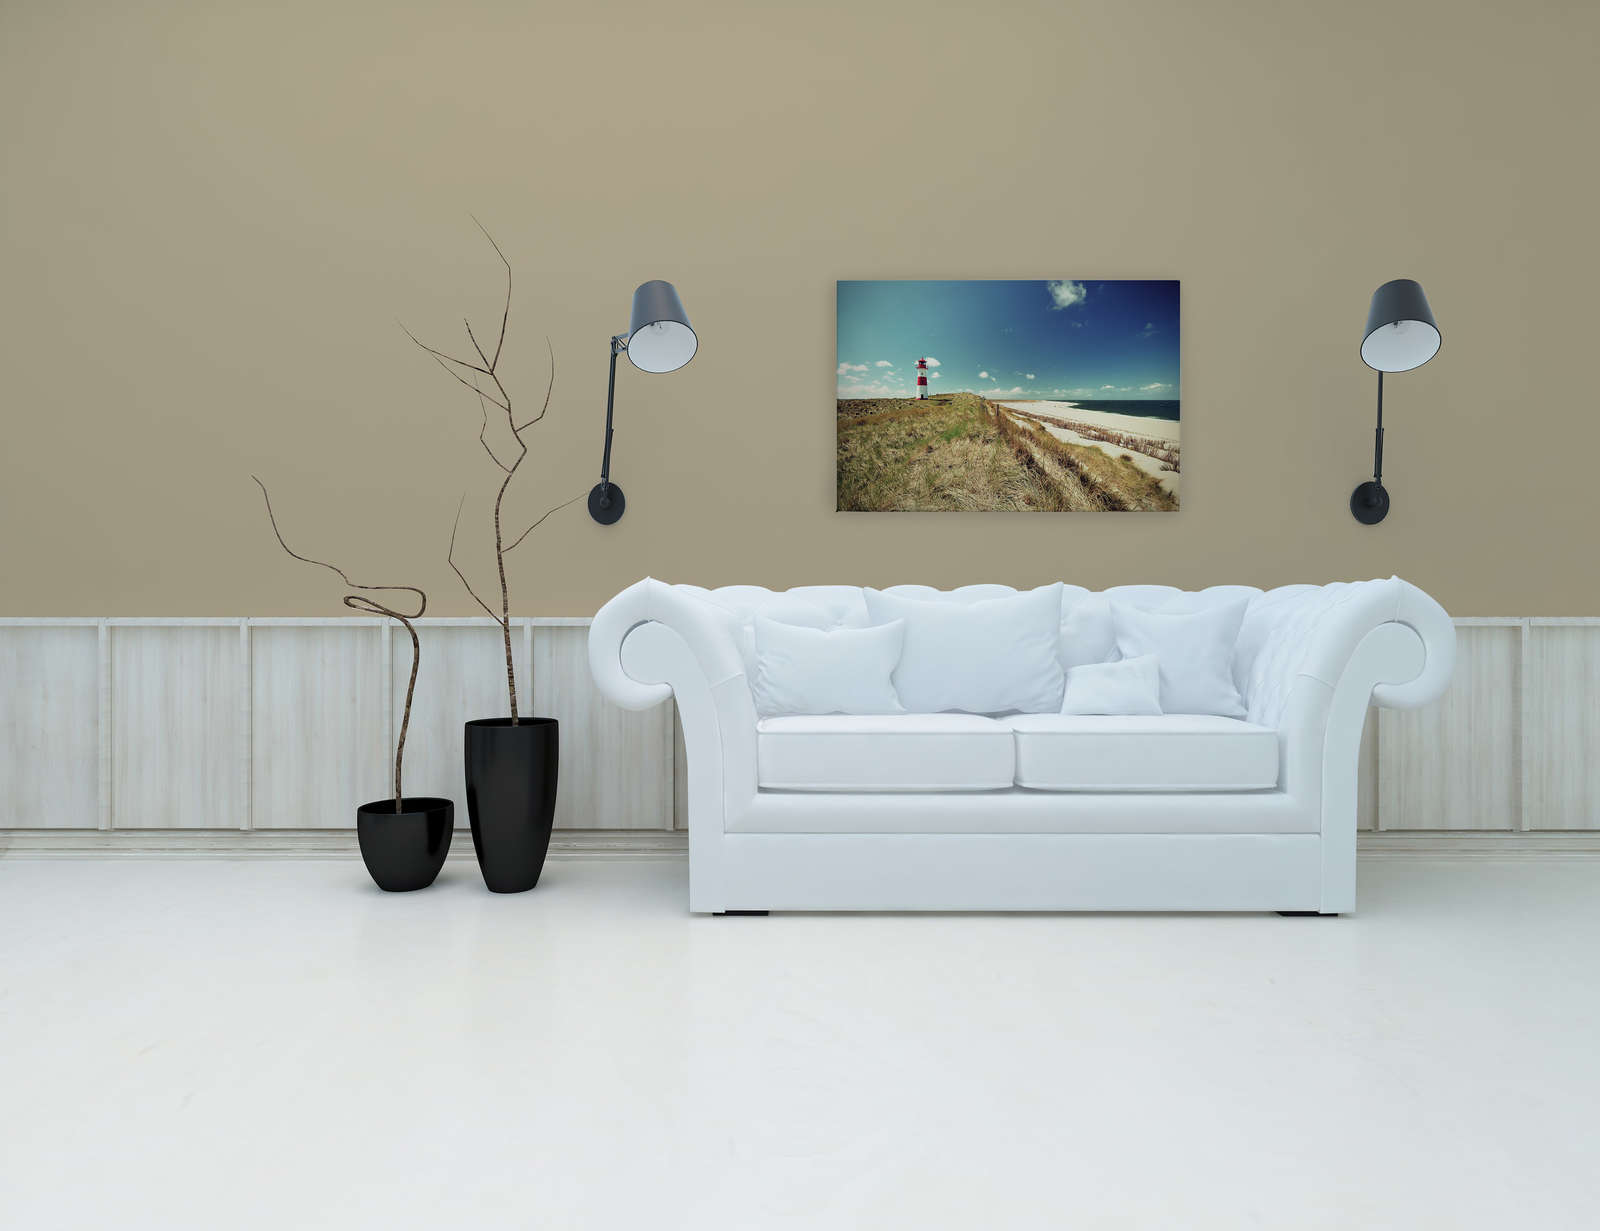             Canvas met strandlandschap met vuurtoren - 0,90 m x 0,60 m
        